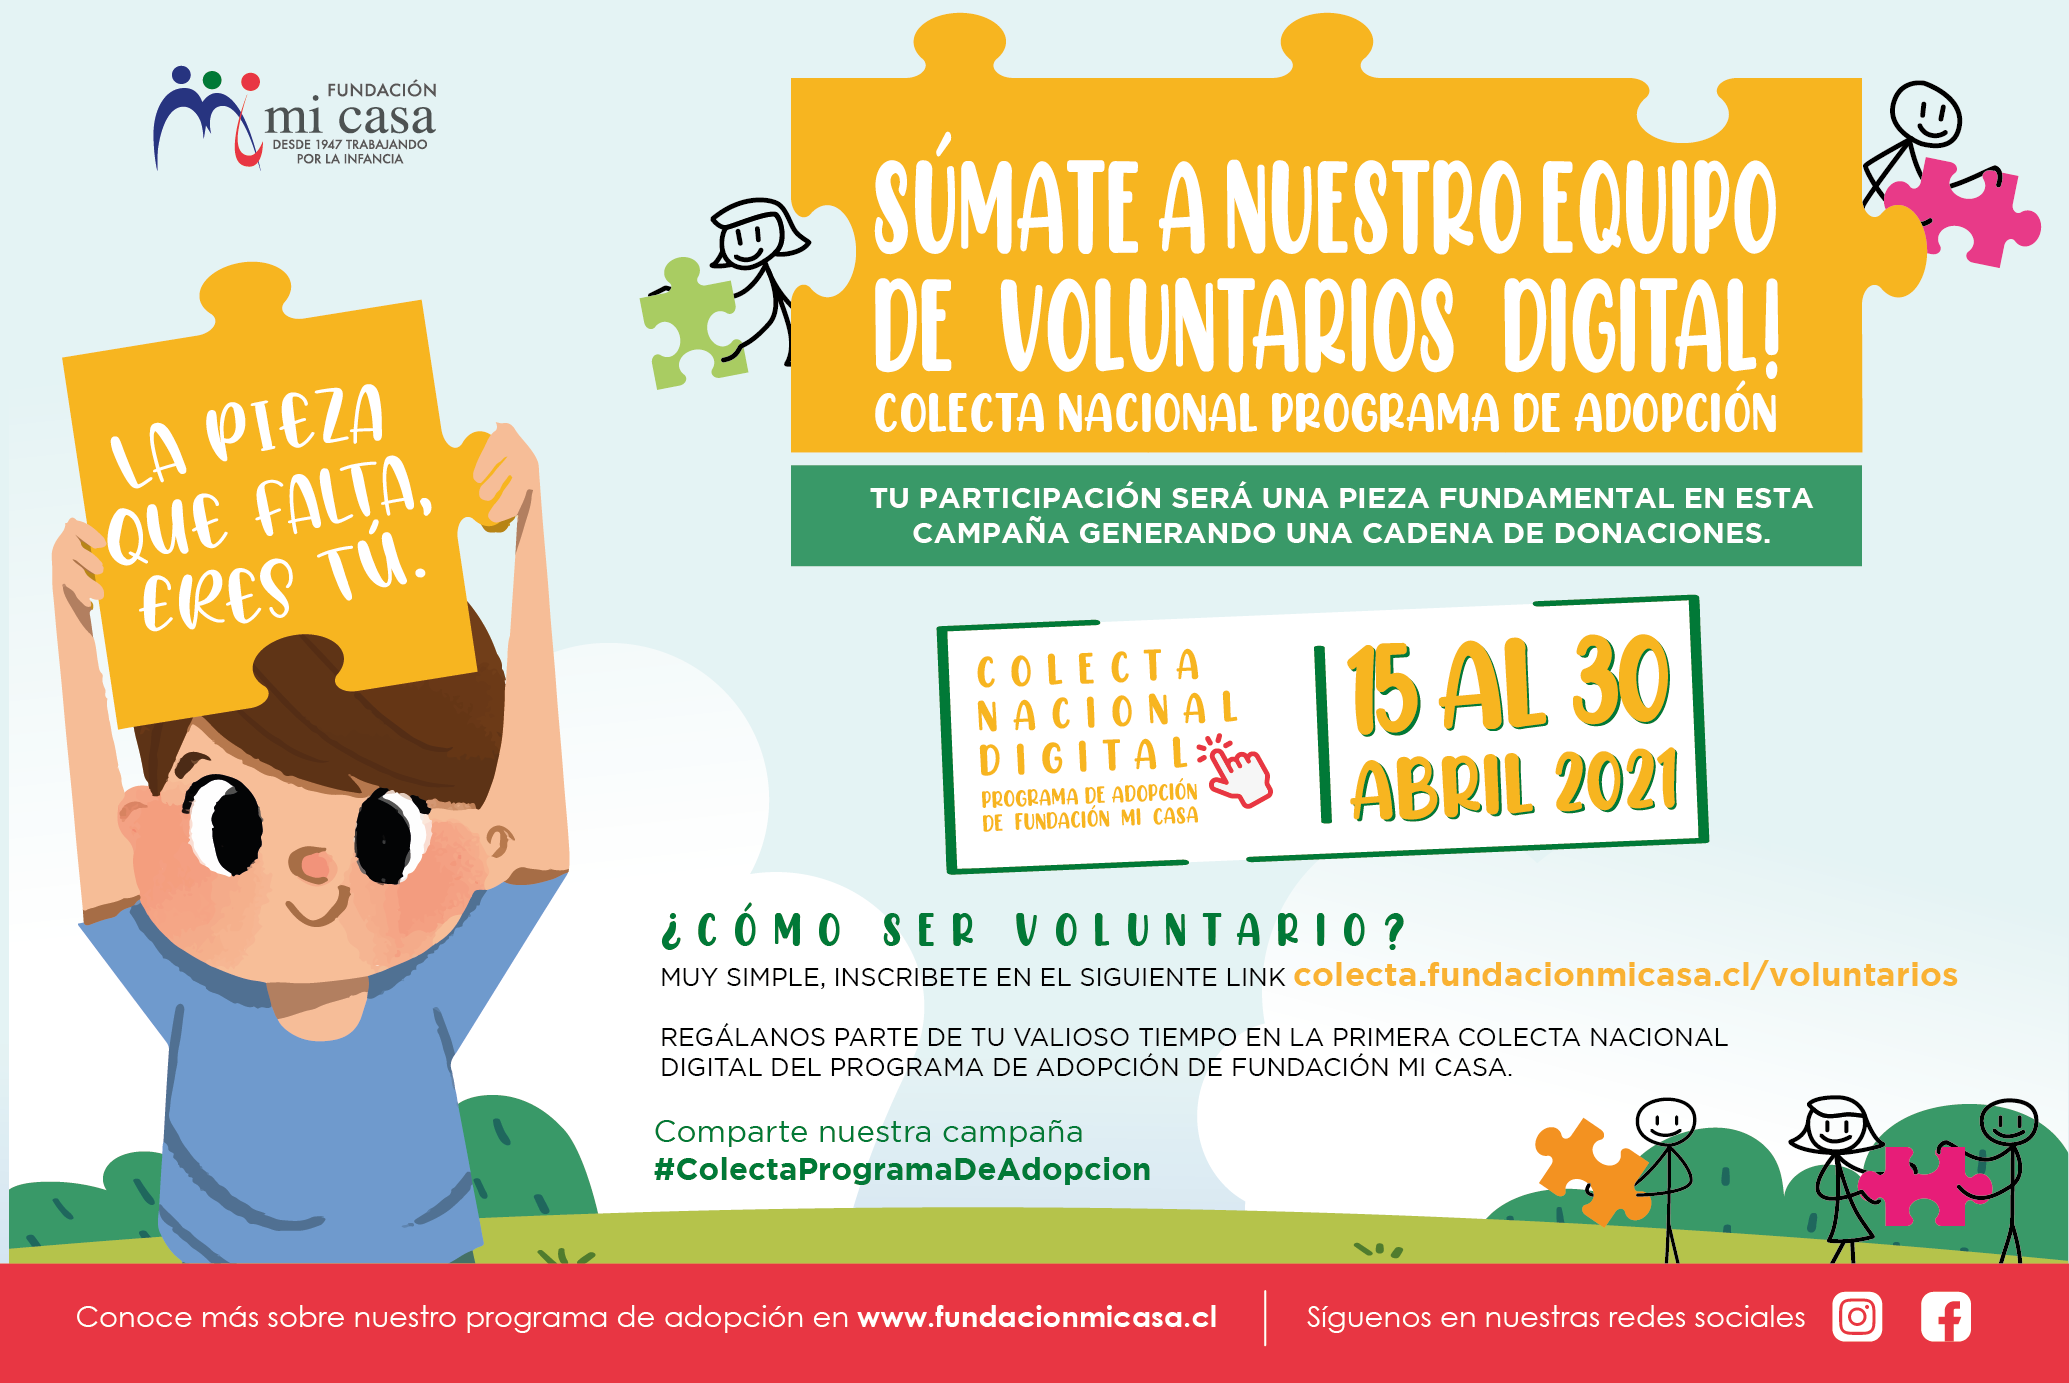 Se buscan voluntarios virtuales: Fundación Mi Casa impulsa la campaña “Colecta Nacional Digital del Programa de Adopción”